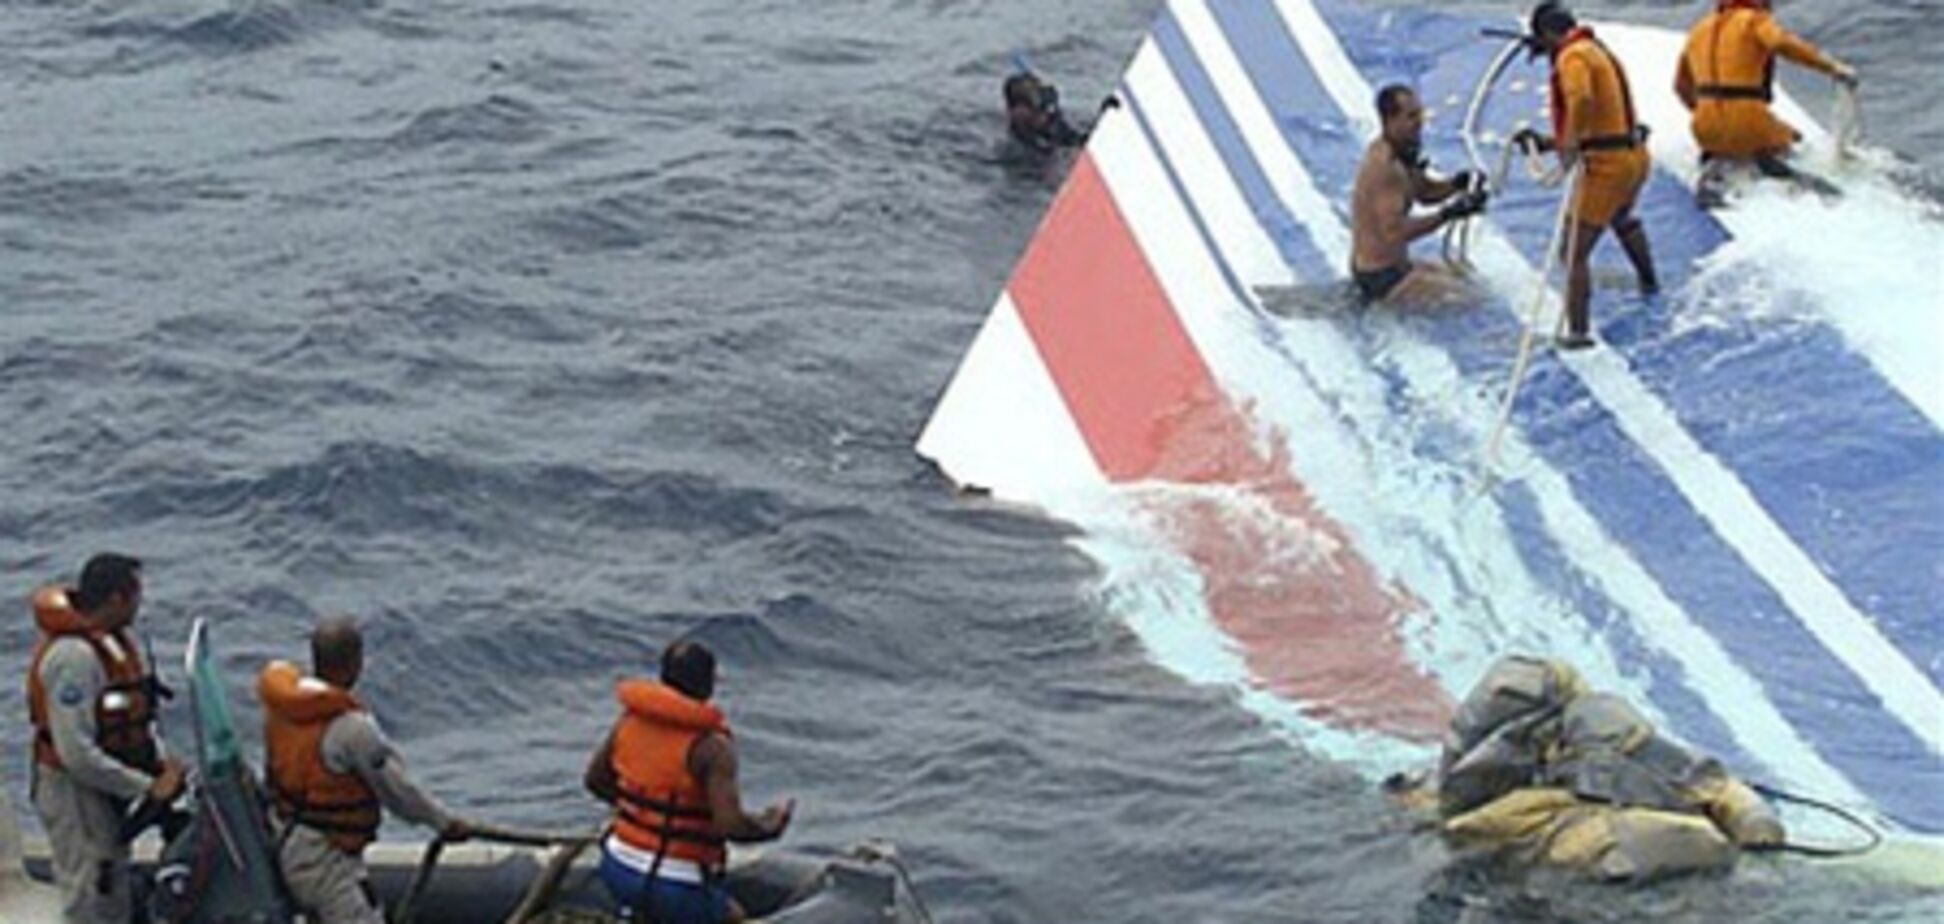 Со дна Атлантики поднято первое тело жертвы крушения аэробуса Air France